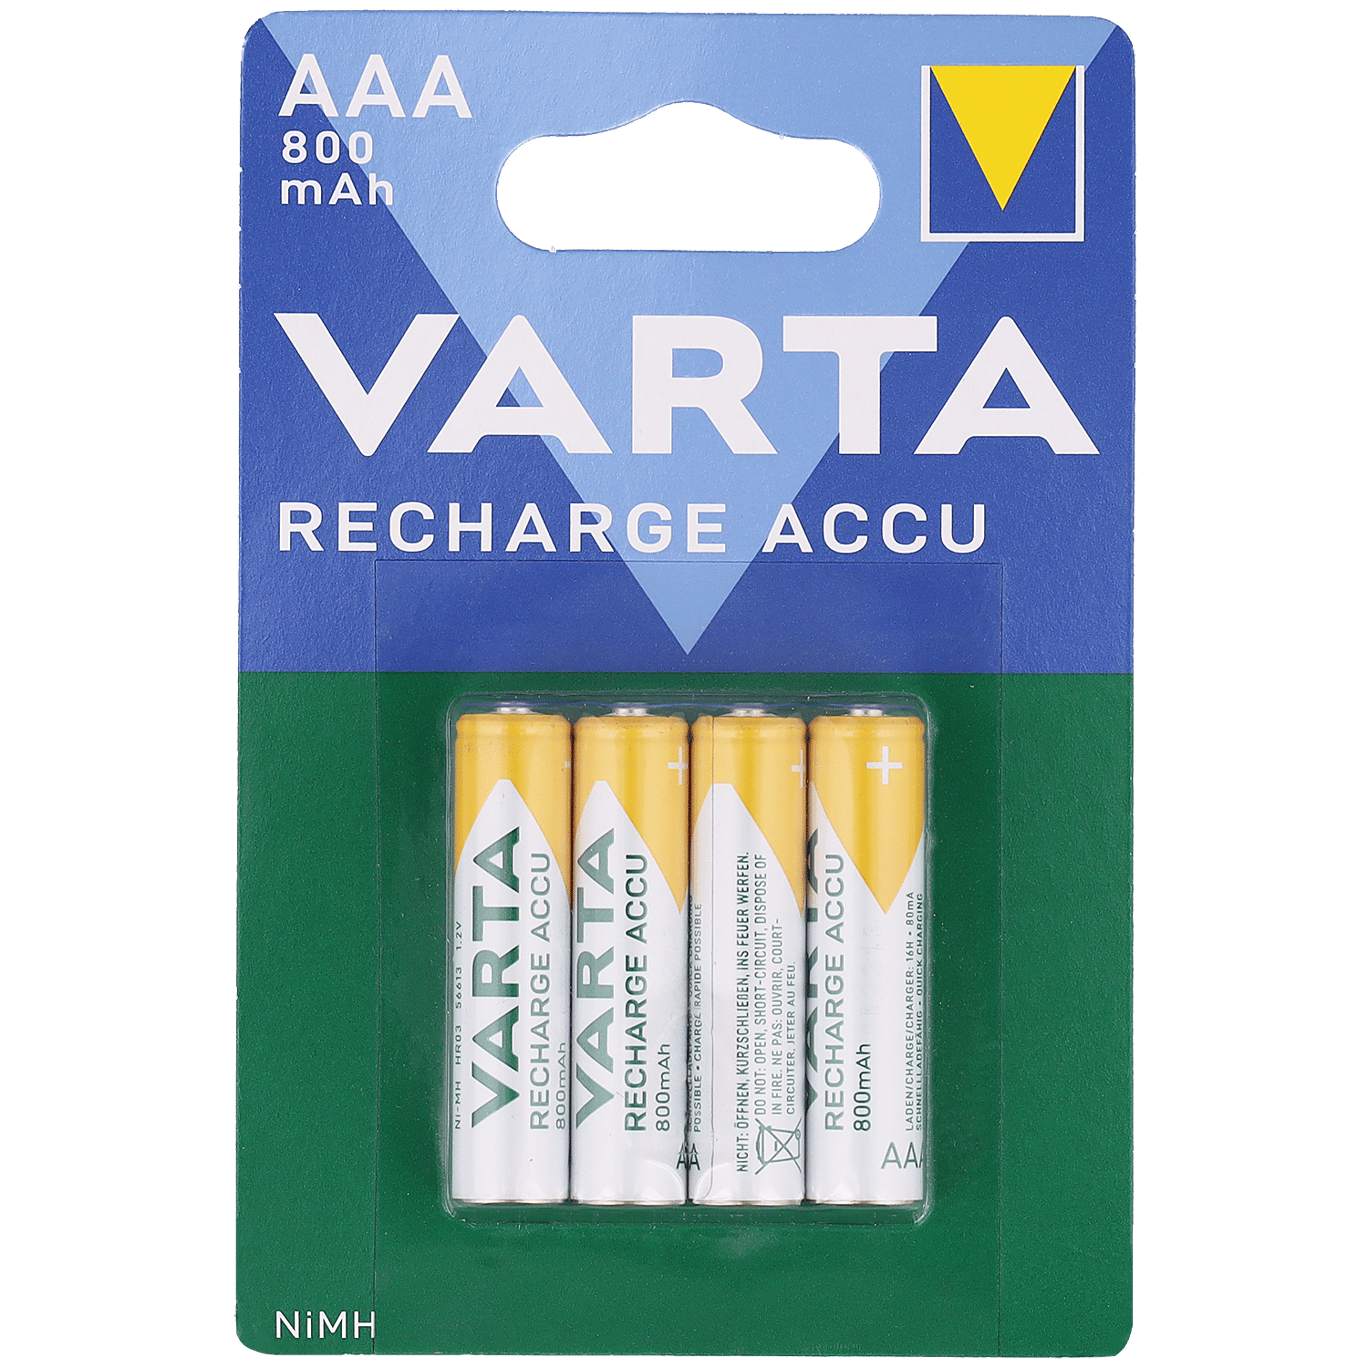 Donder Leer interieur Varta oplaadbare batterijen AAA | Action.com